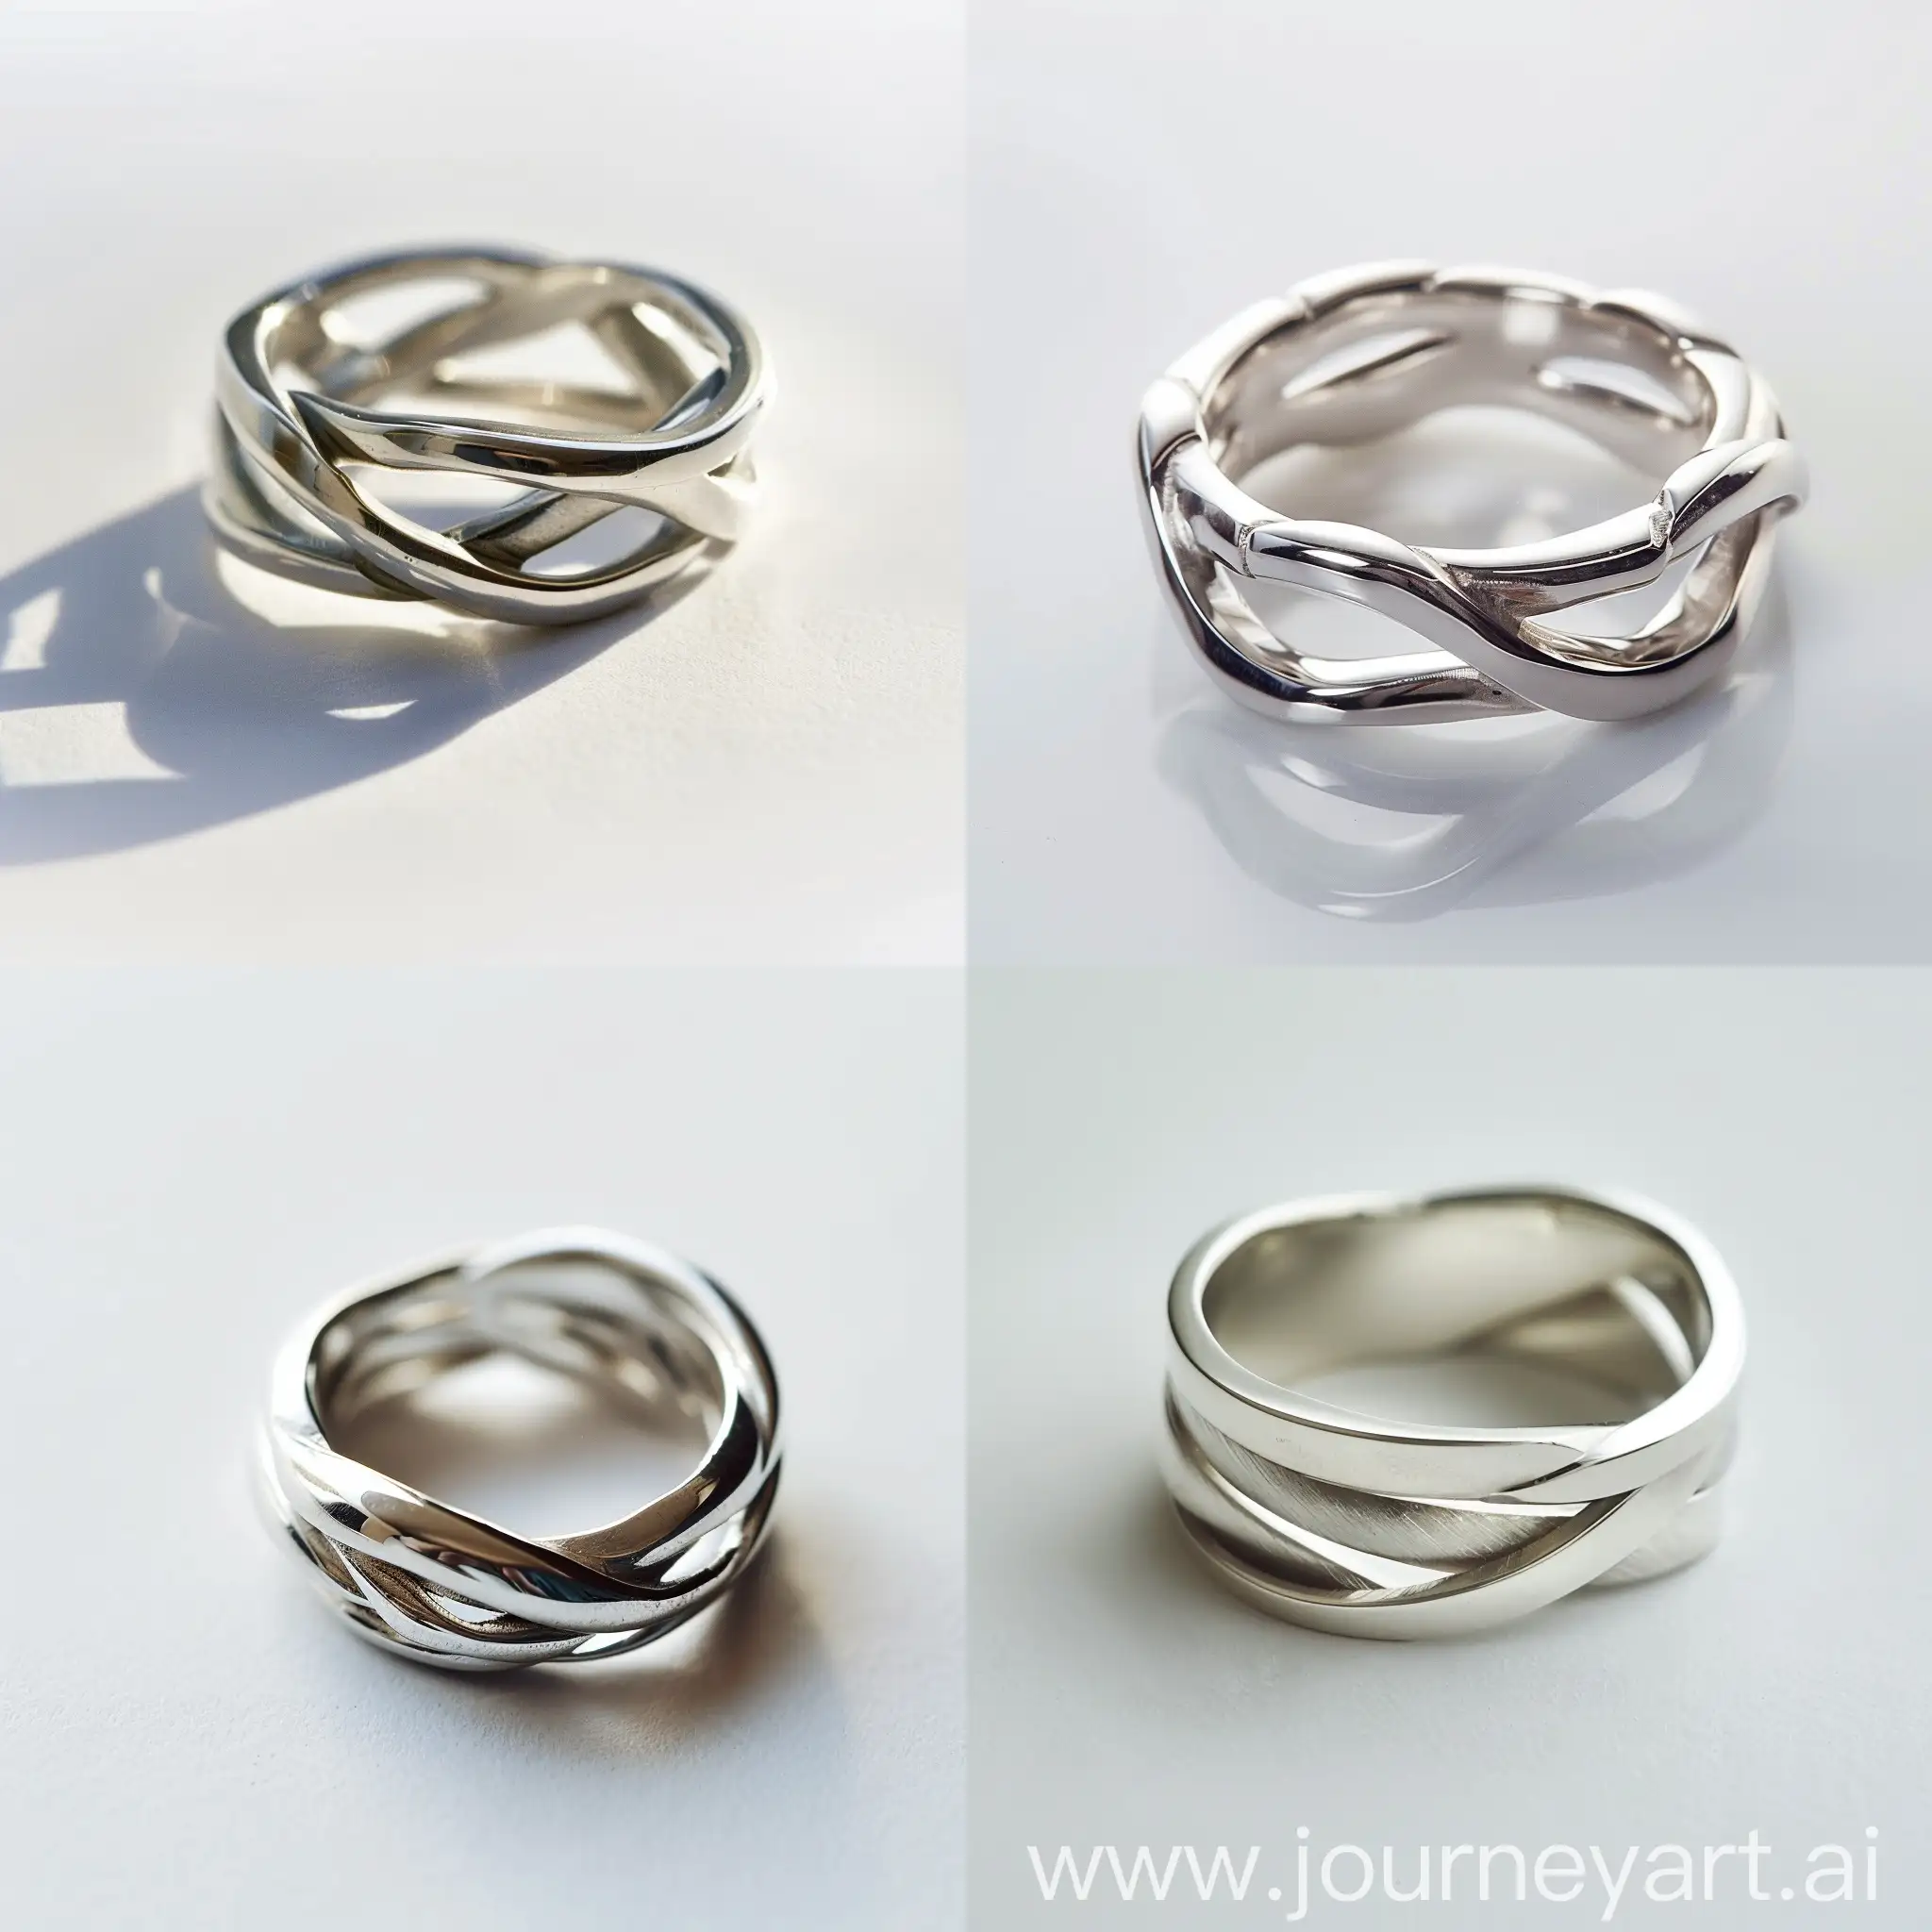 приближённое фото современного серебряного кольца, состоящего из переплетений, на белом фоне, само кольцо выполнено в стиле минимализм